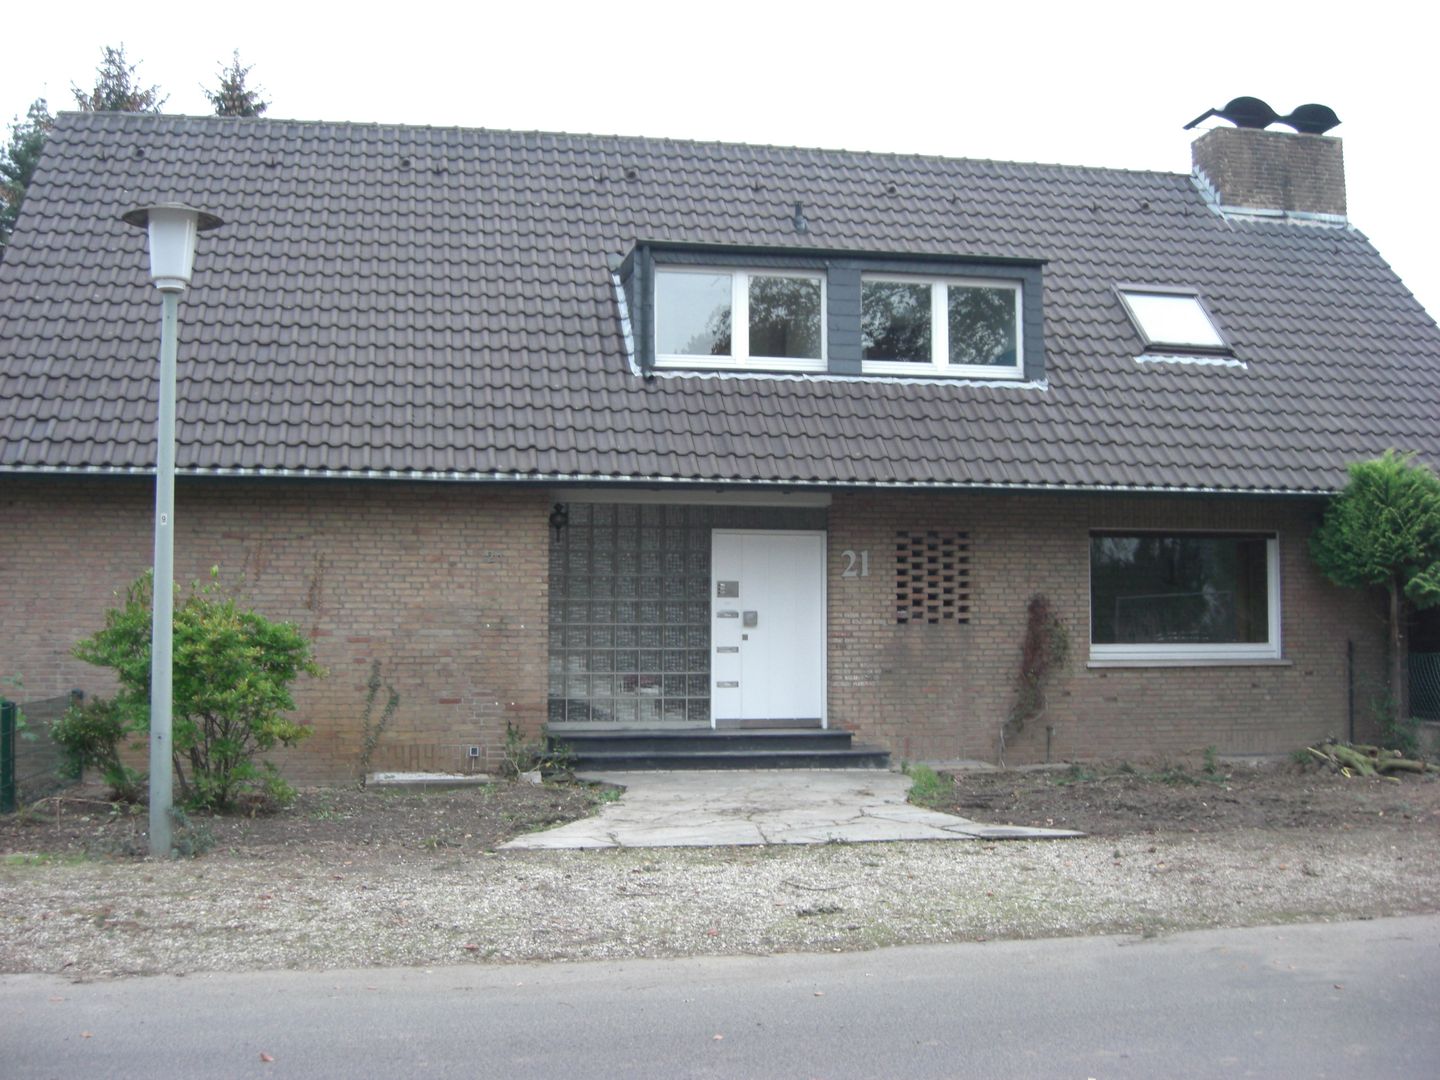 Aus einem alten Mehrfamilienhaus wird ein modernes Einfamilienhaus, 28 Grad Architektur GmbH 28 Grad Architektur GmbH